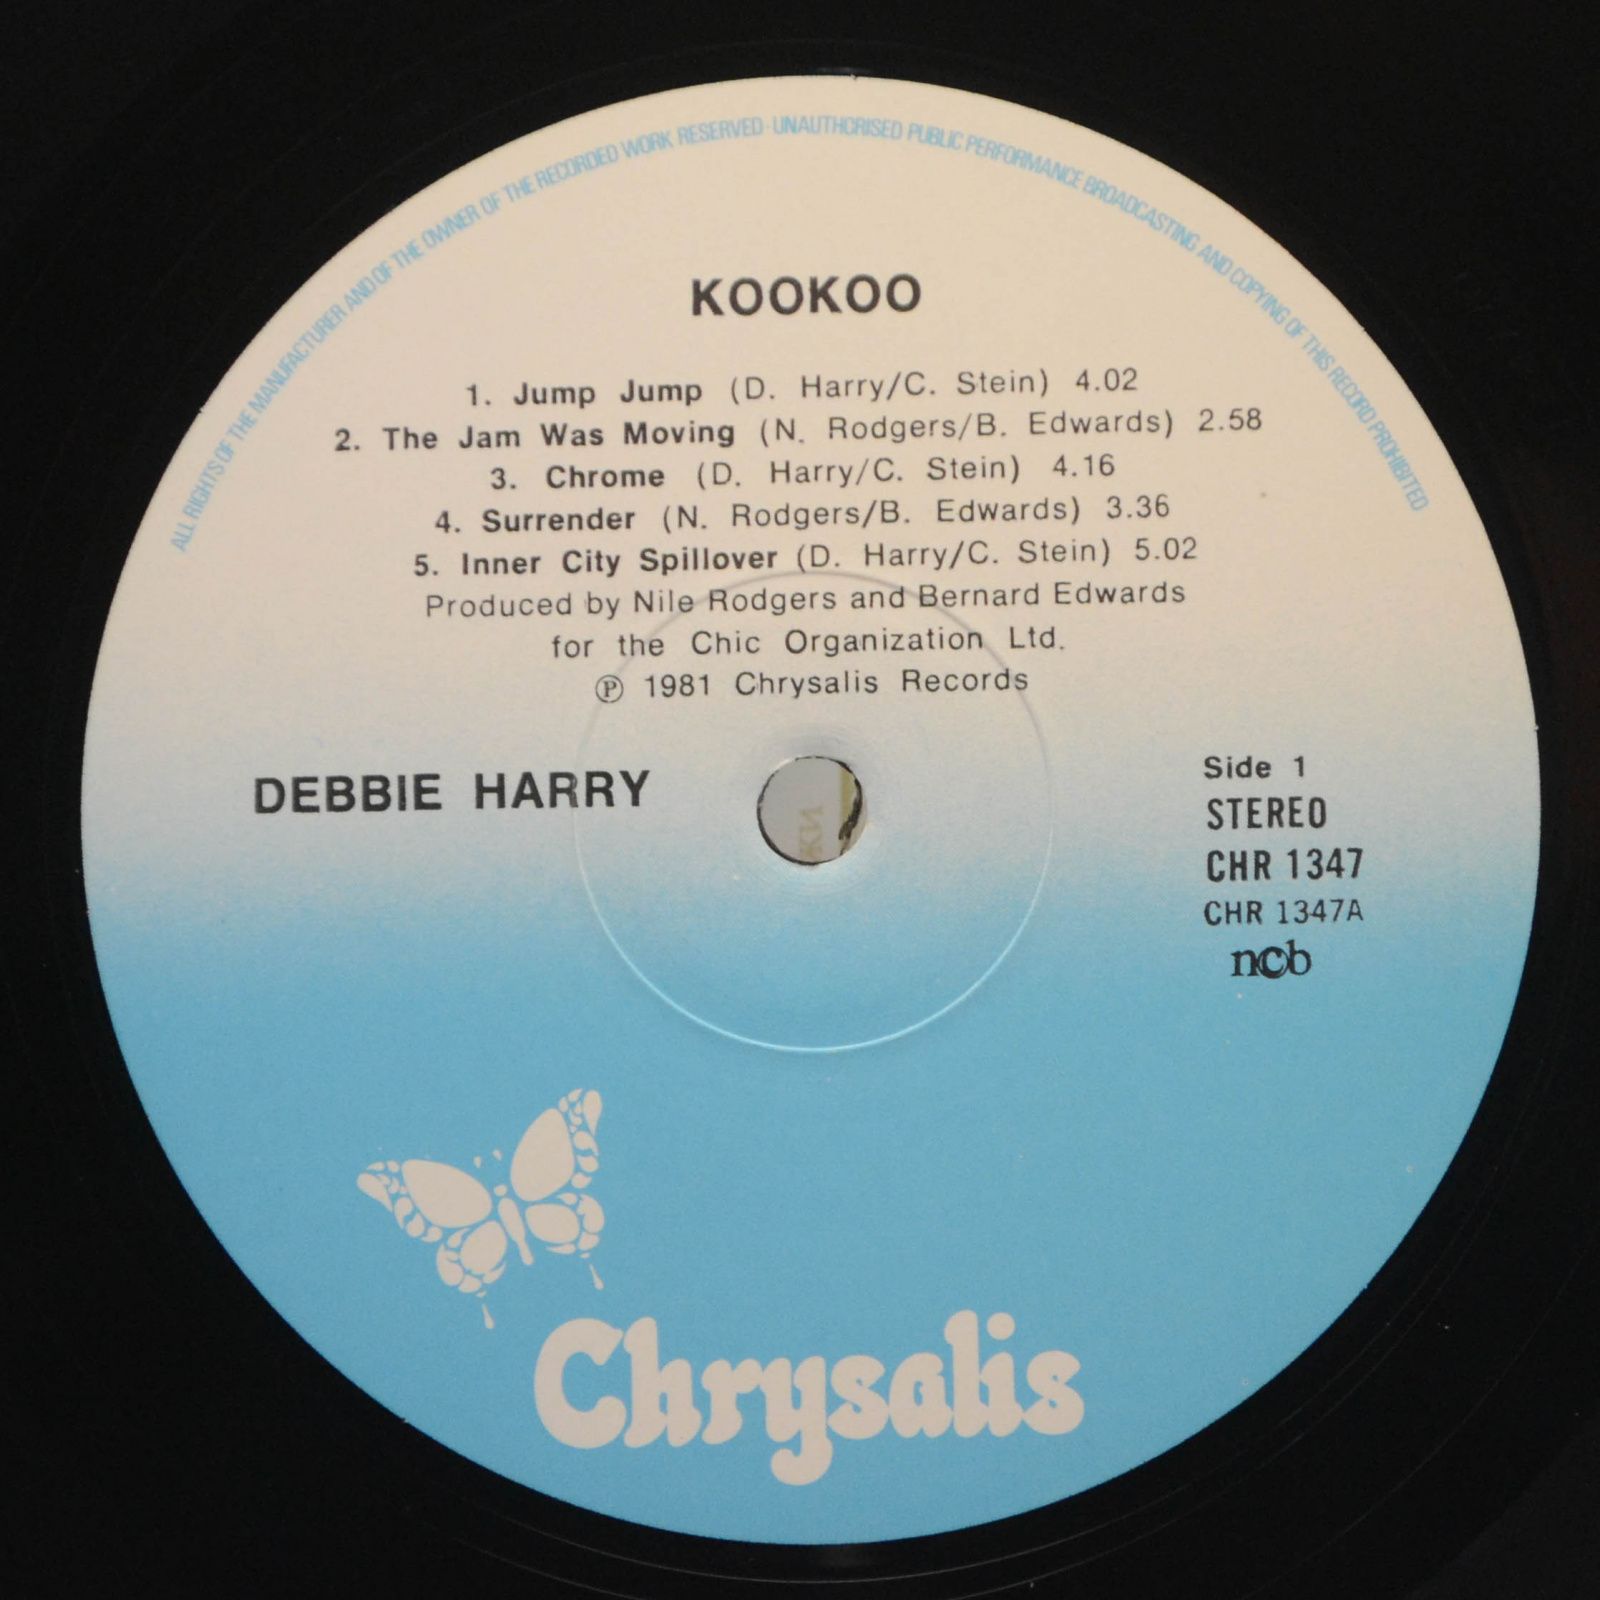 Debbie Harry — KooKoo, 1981